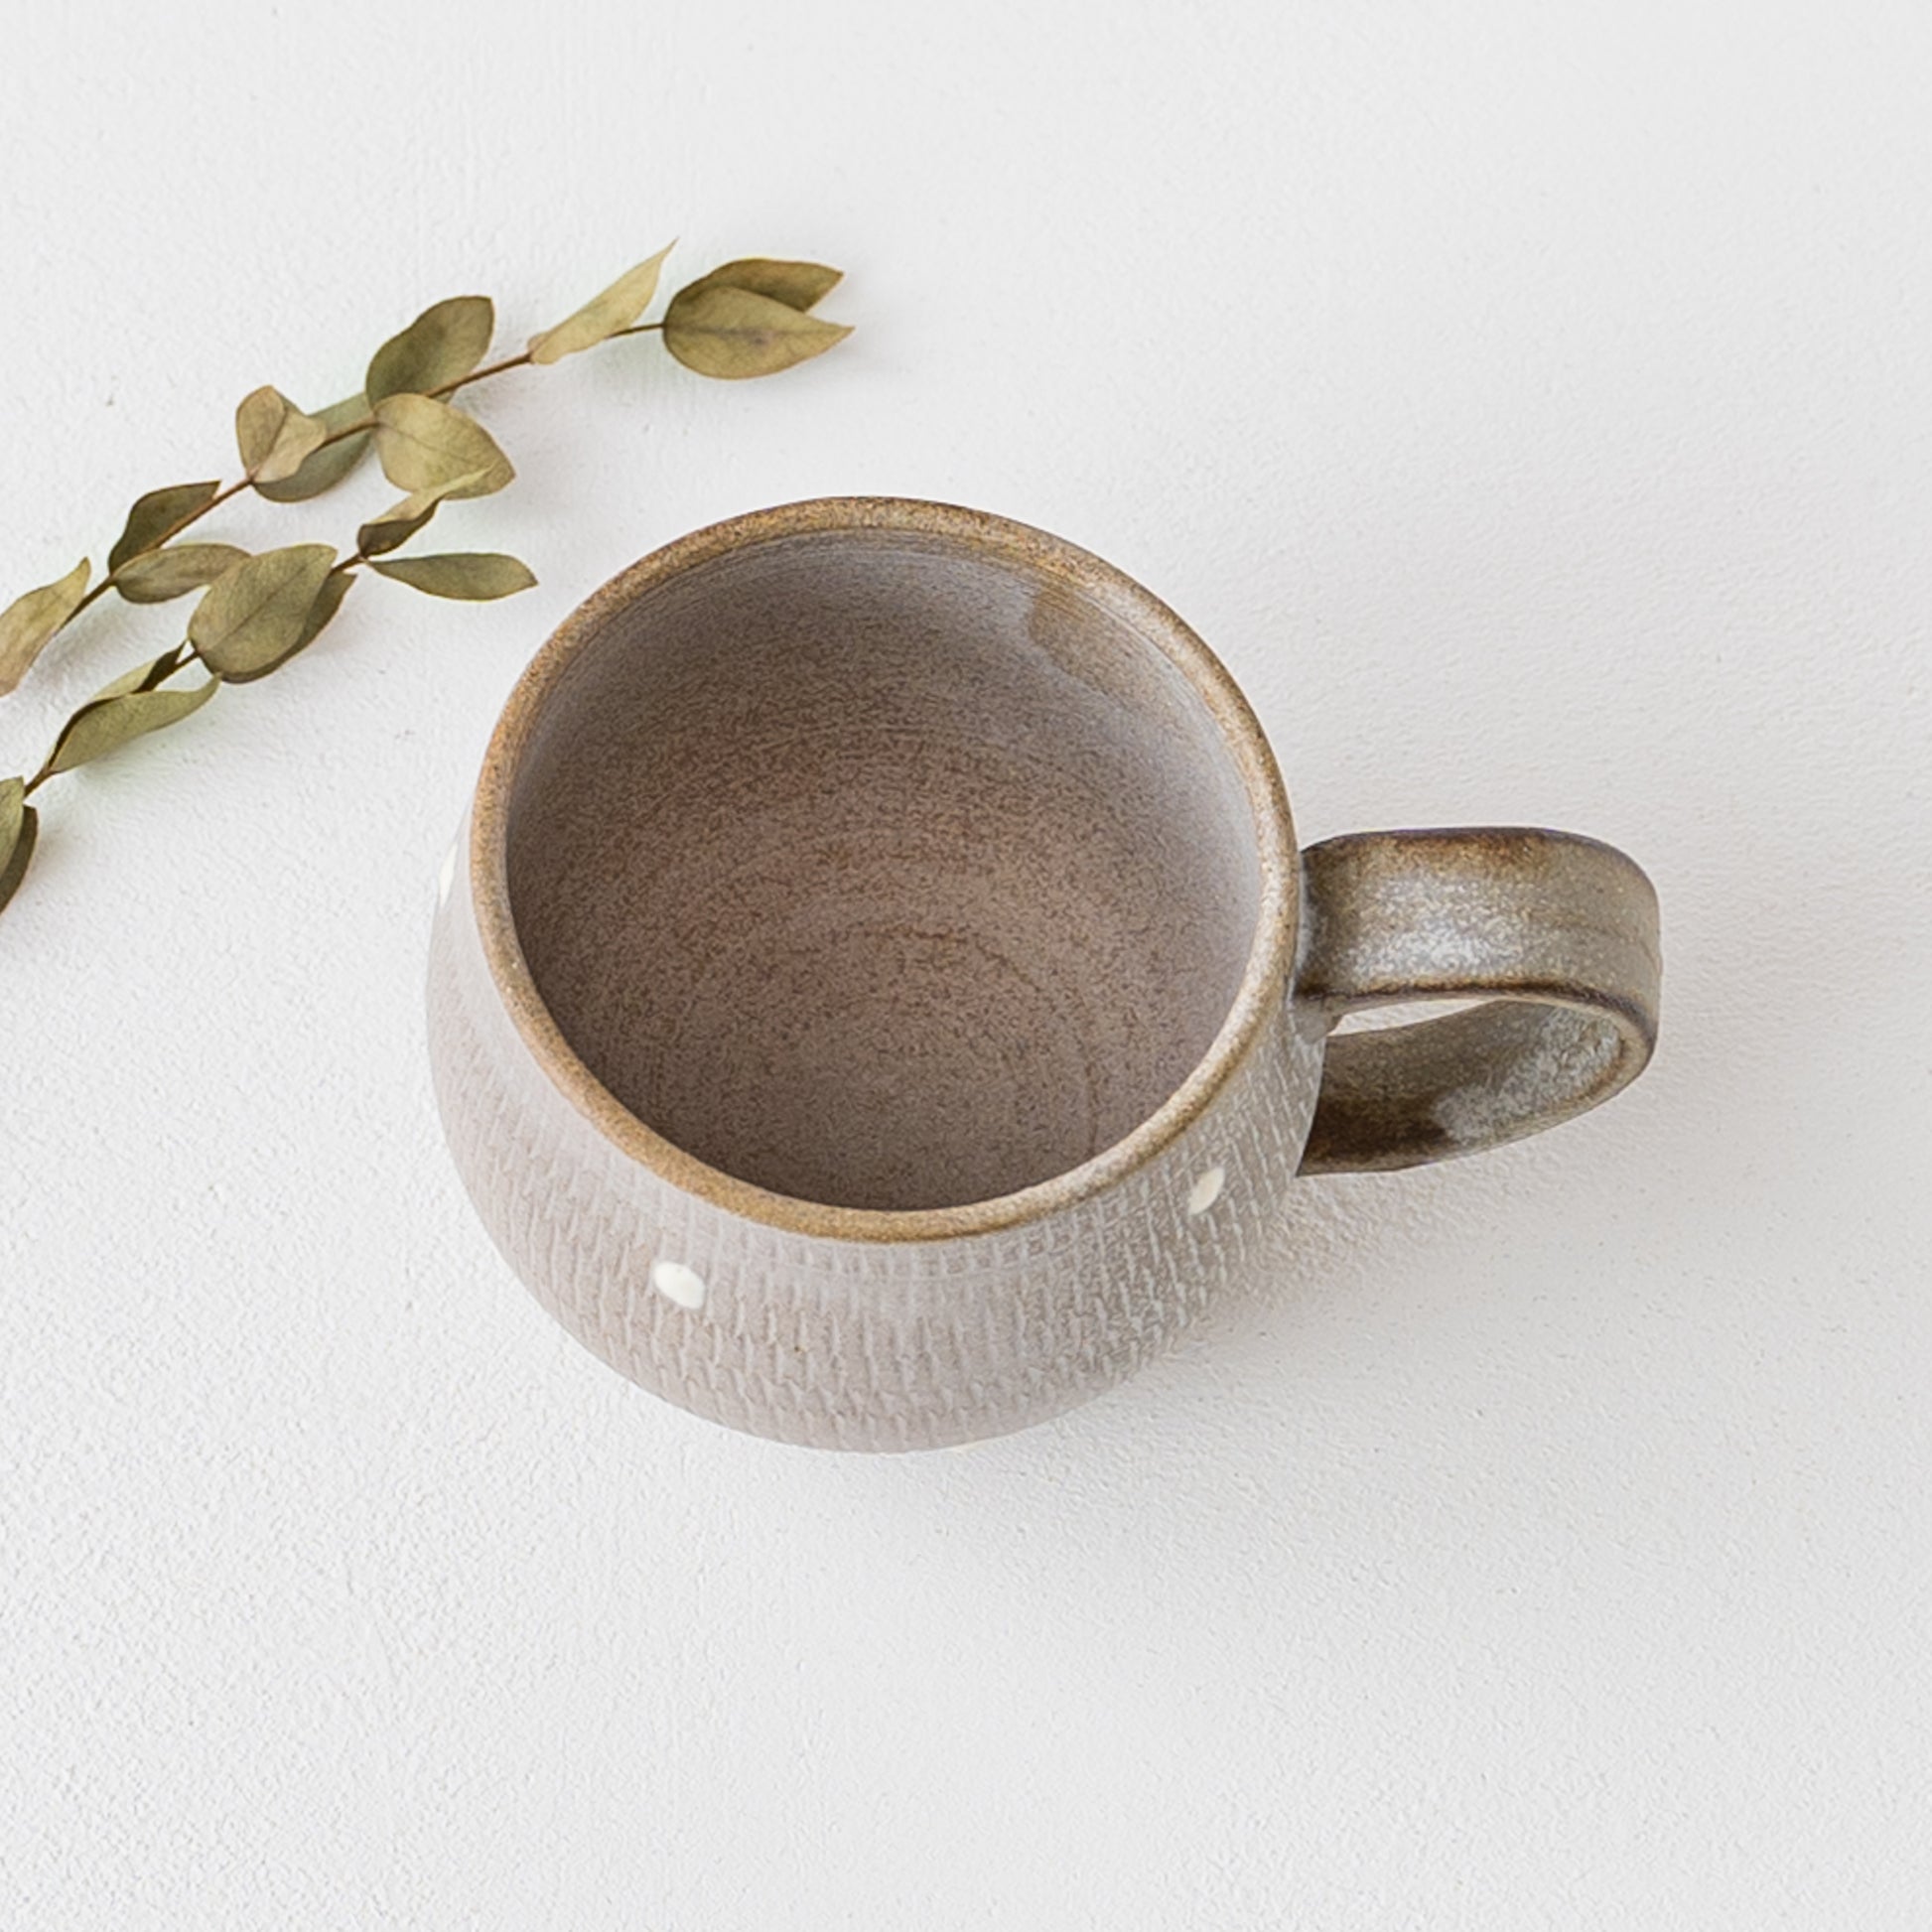 来客用のおもてなしにも使いたくなる小石原焼翁明窯元のコーヒーカップ